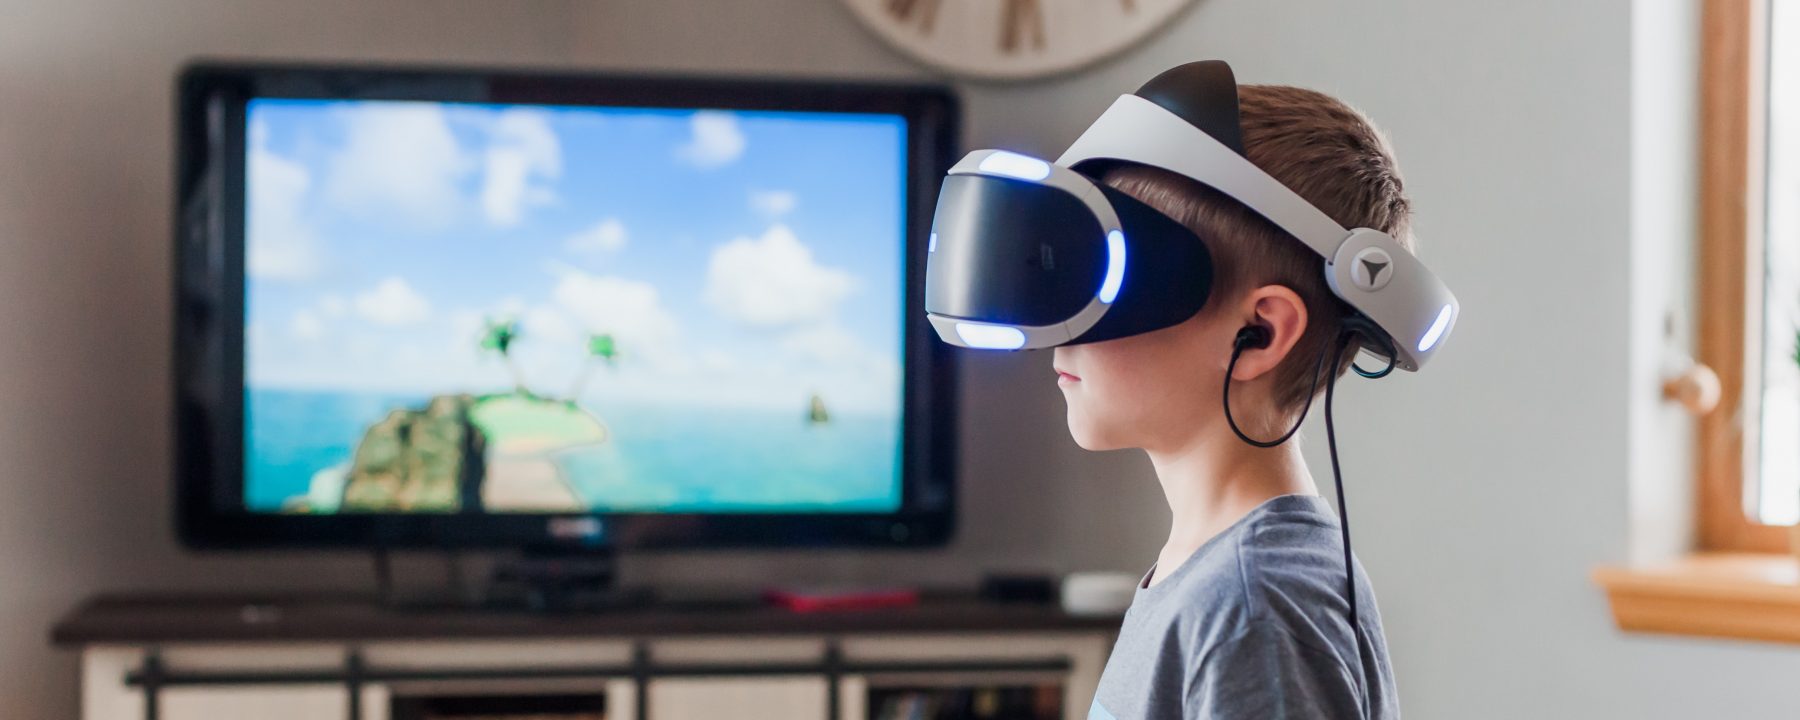 Virtuel turisme VR trends innovation lab jarle fink kondrup turismeudvikling Virtual reality - virtuelle oplevelser